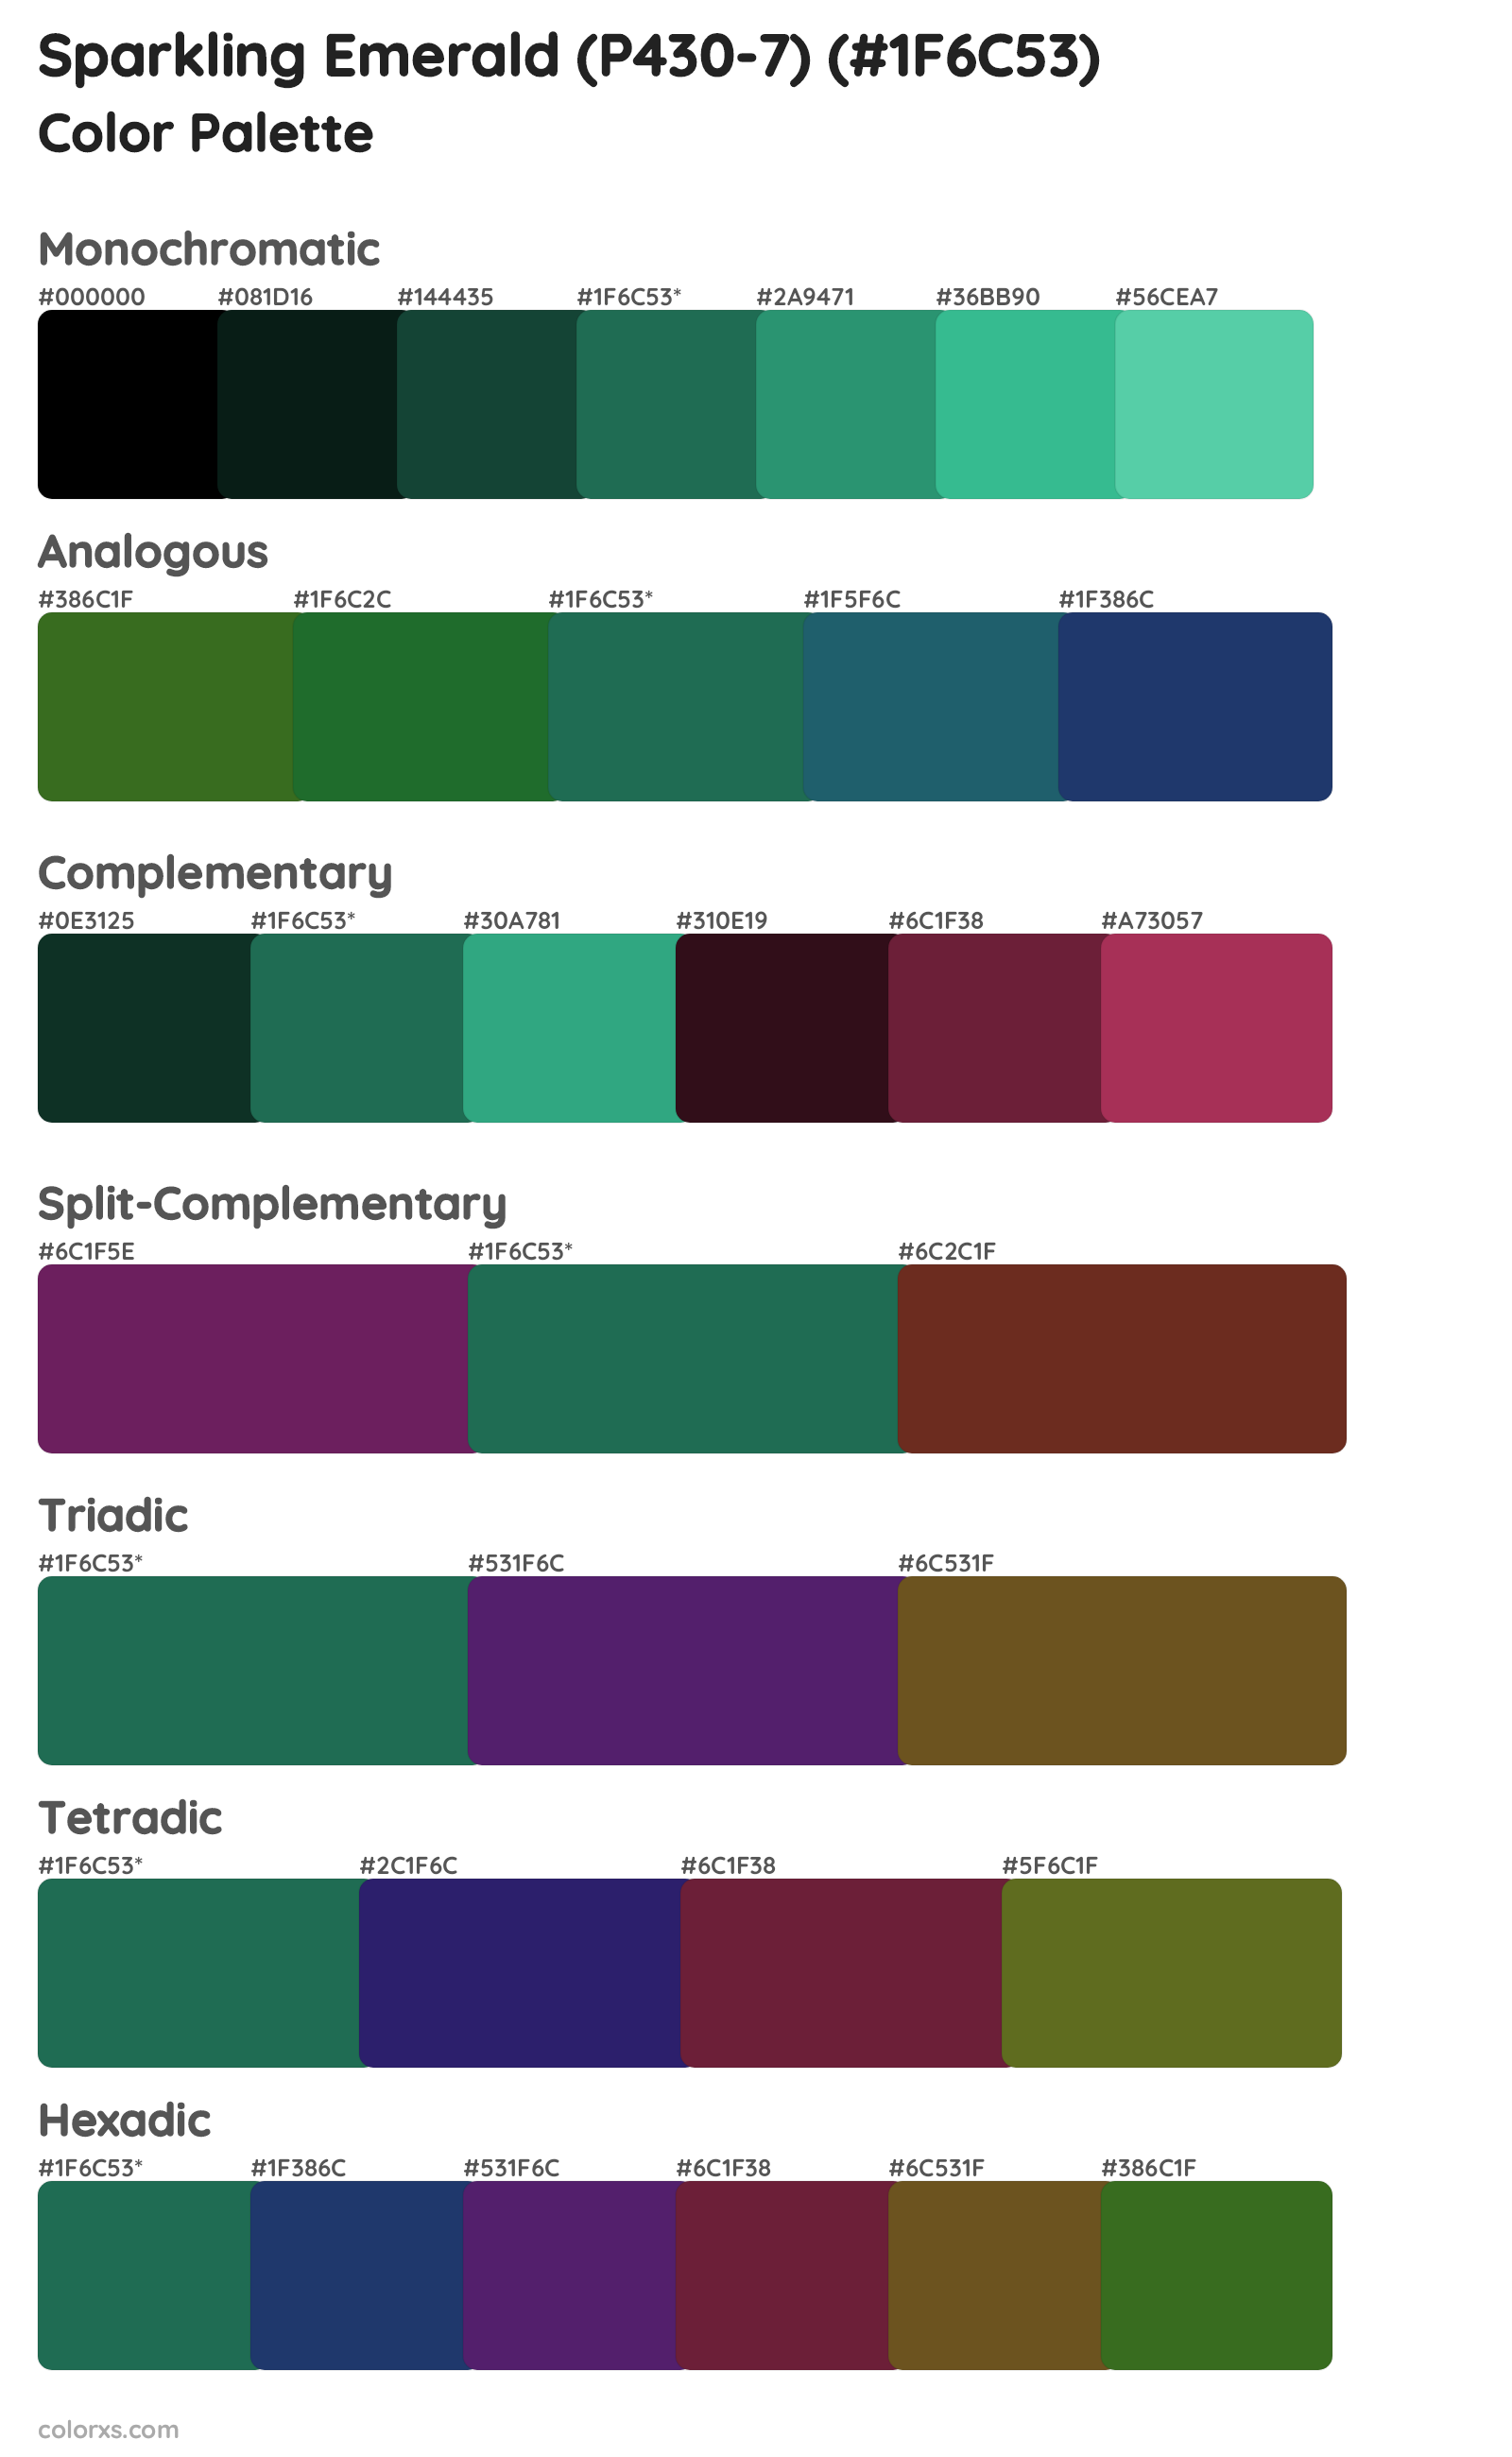 Sparkling Emerald (P430-7) Color Scheme Palettes